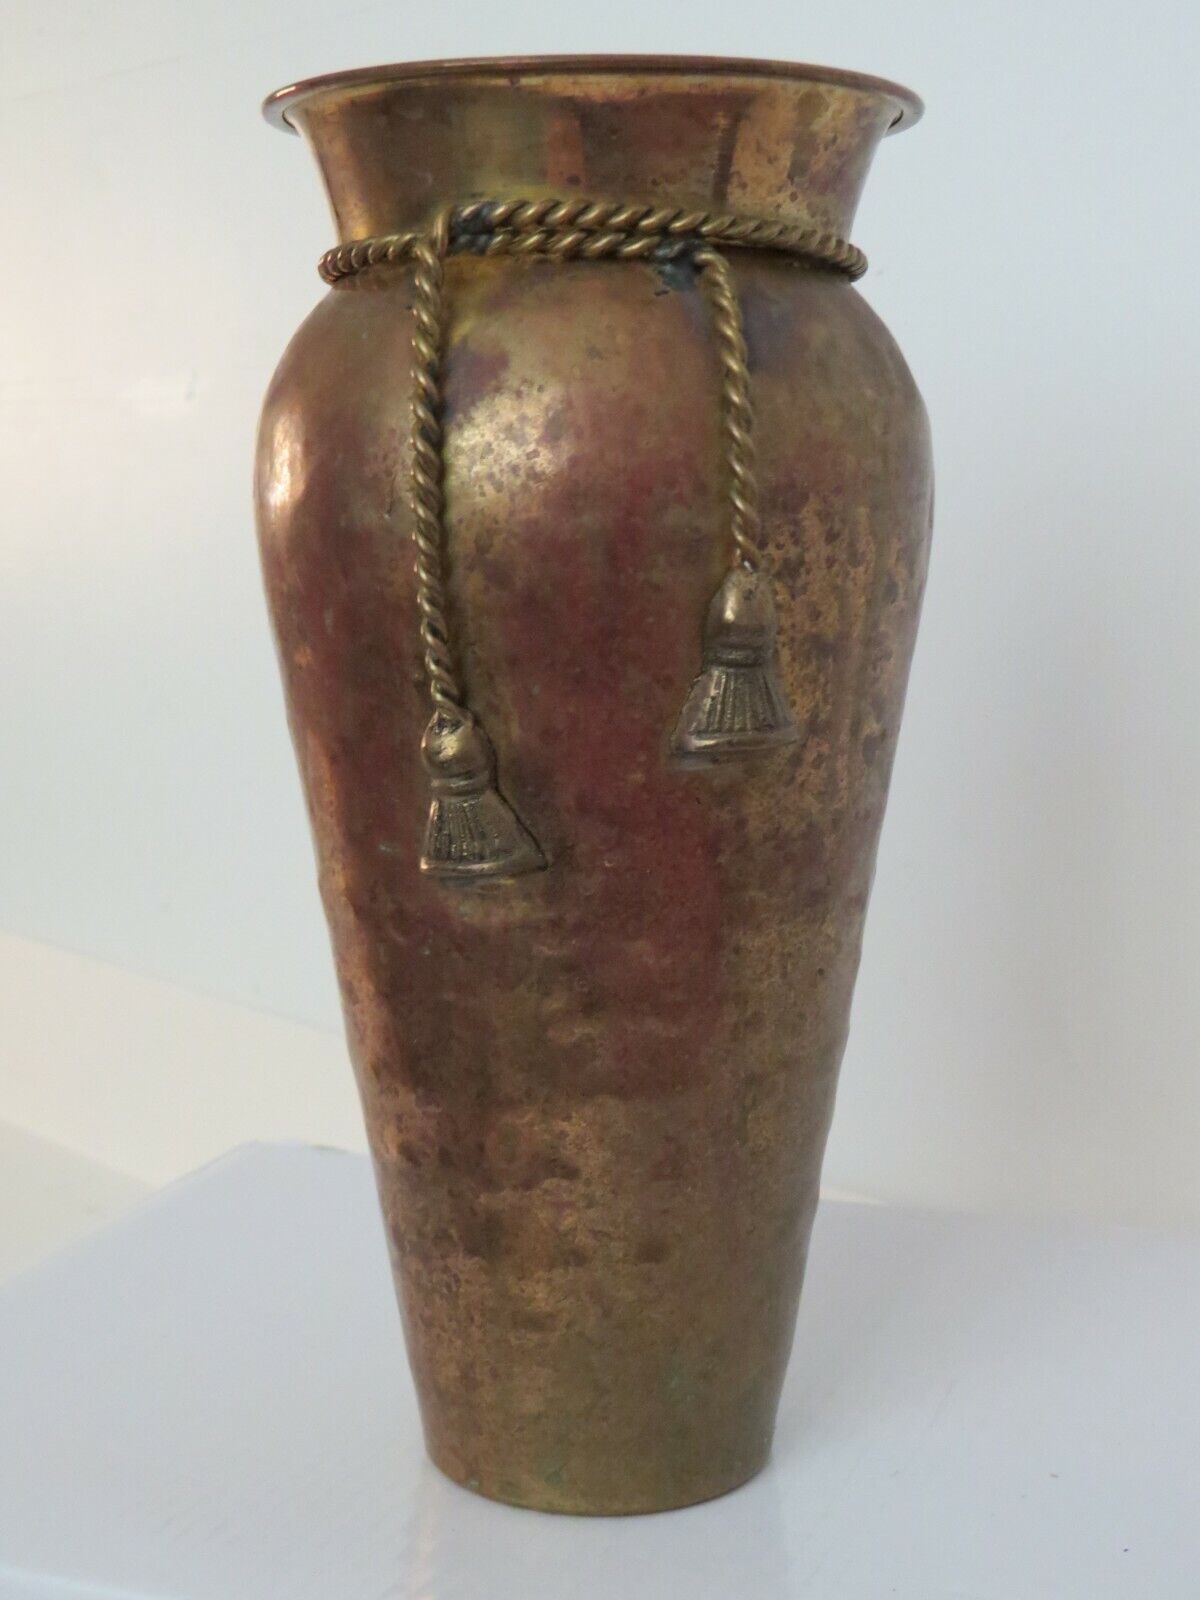 Vintage 9” Hammered Brass Vase with Decorative Brass Tassels